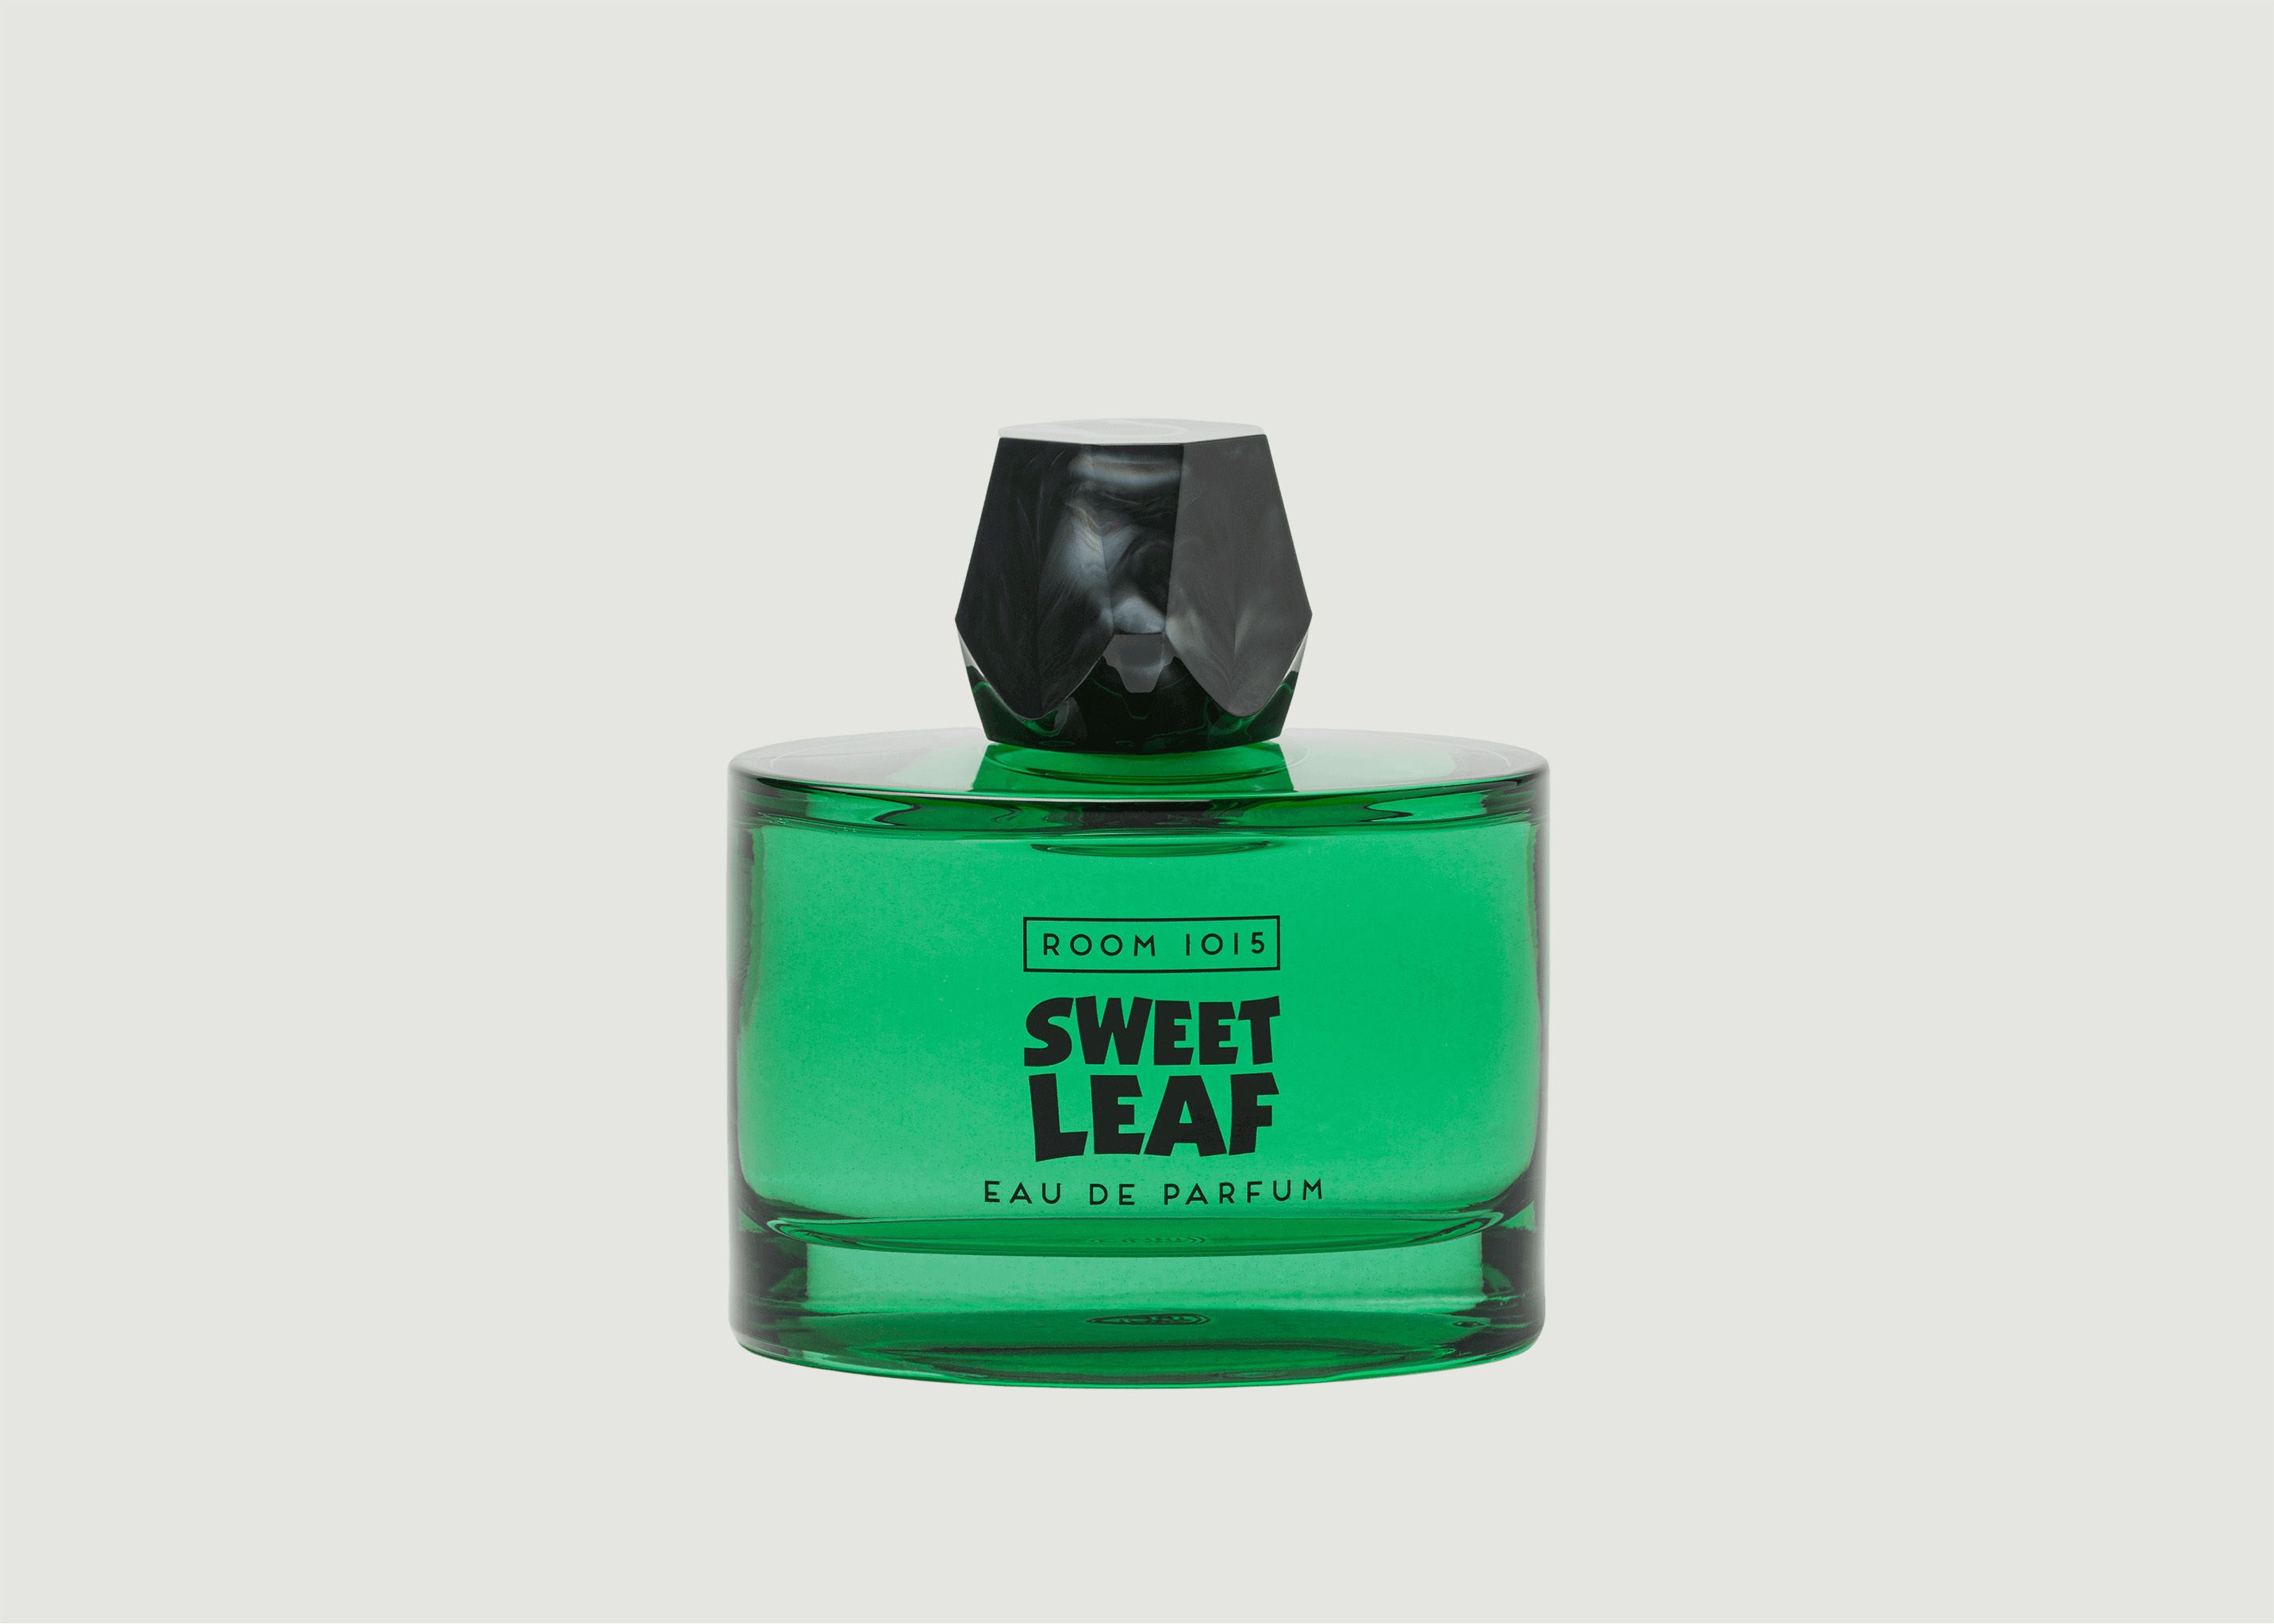 Parfum Sweet Leaf 100ml  - Room 1015